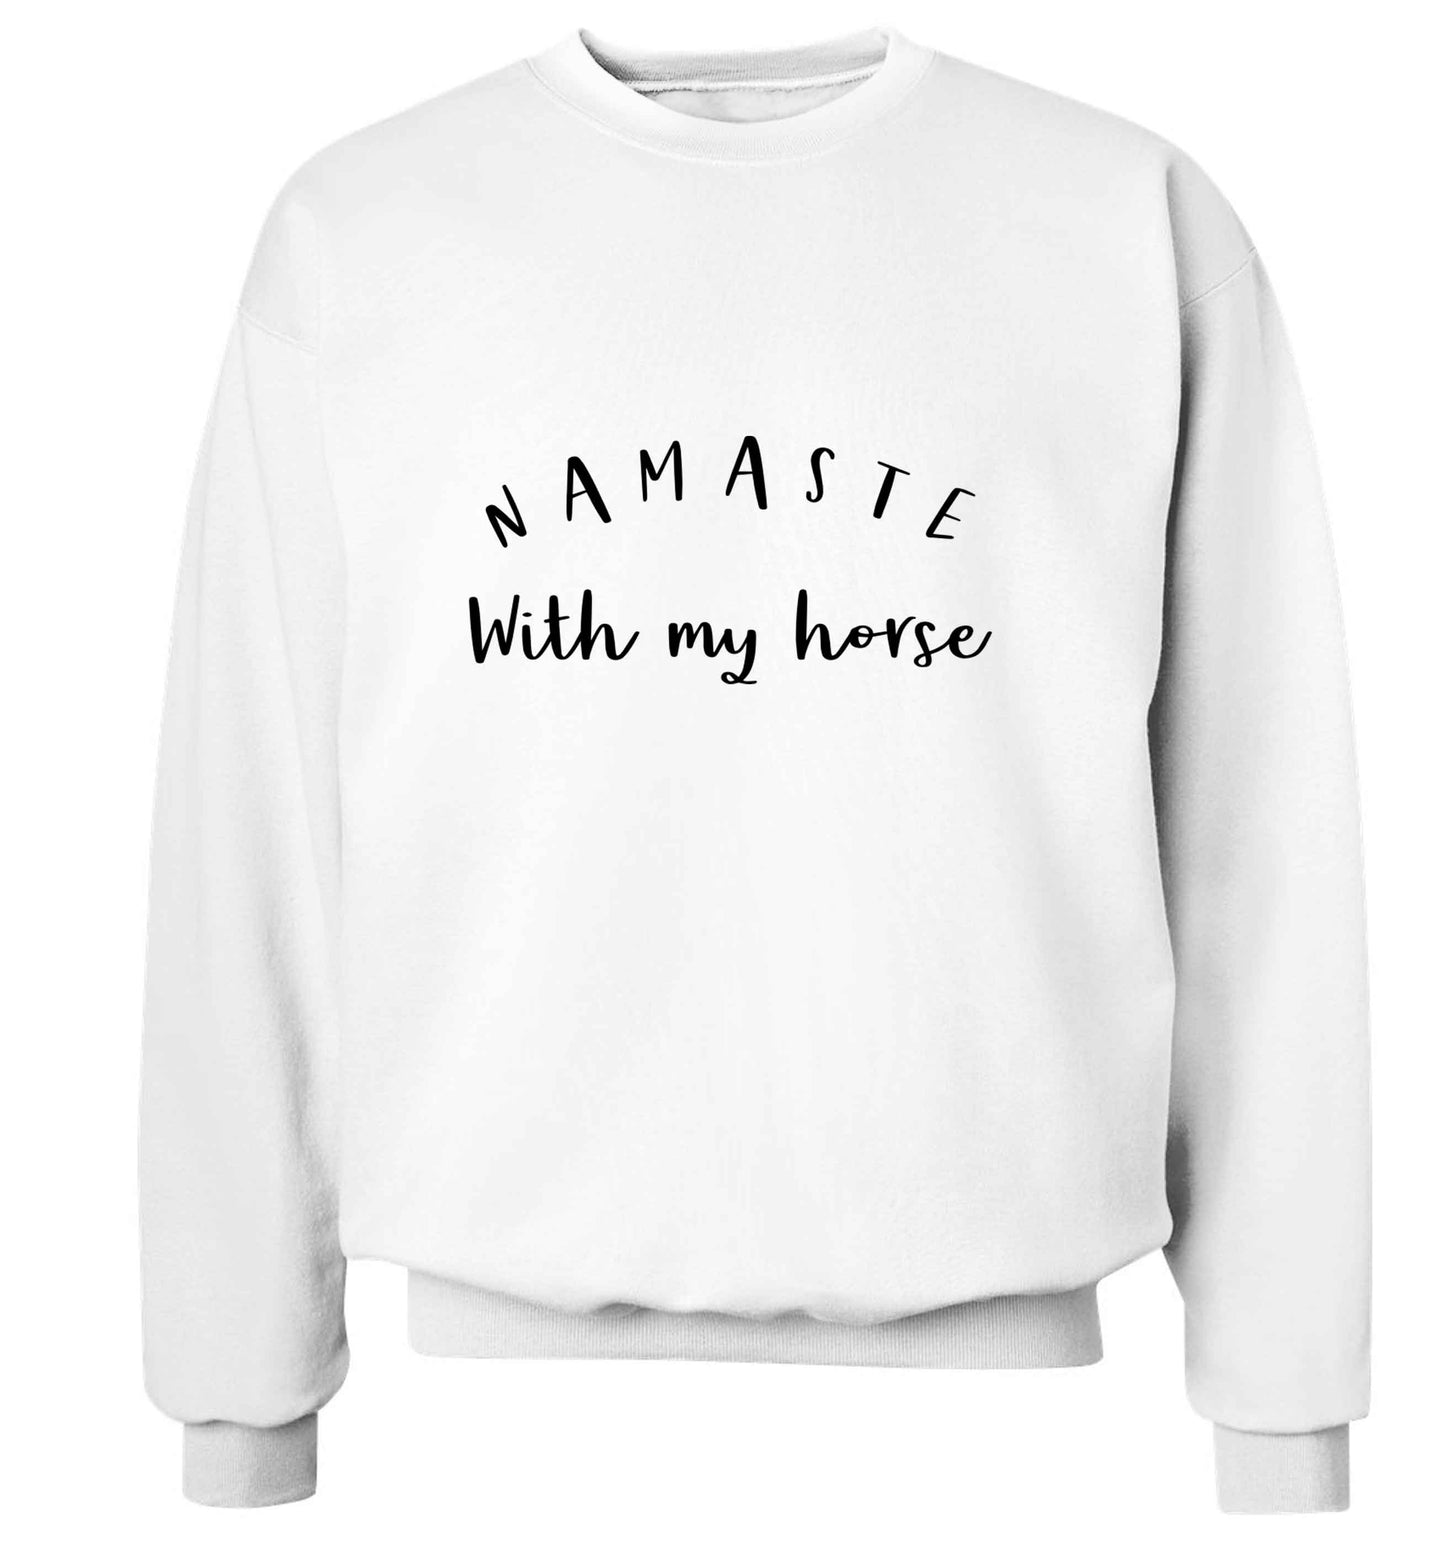 Namaste with my horse adult's unisex white sweater 2XL